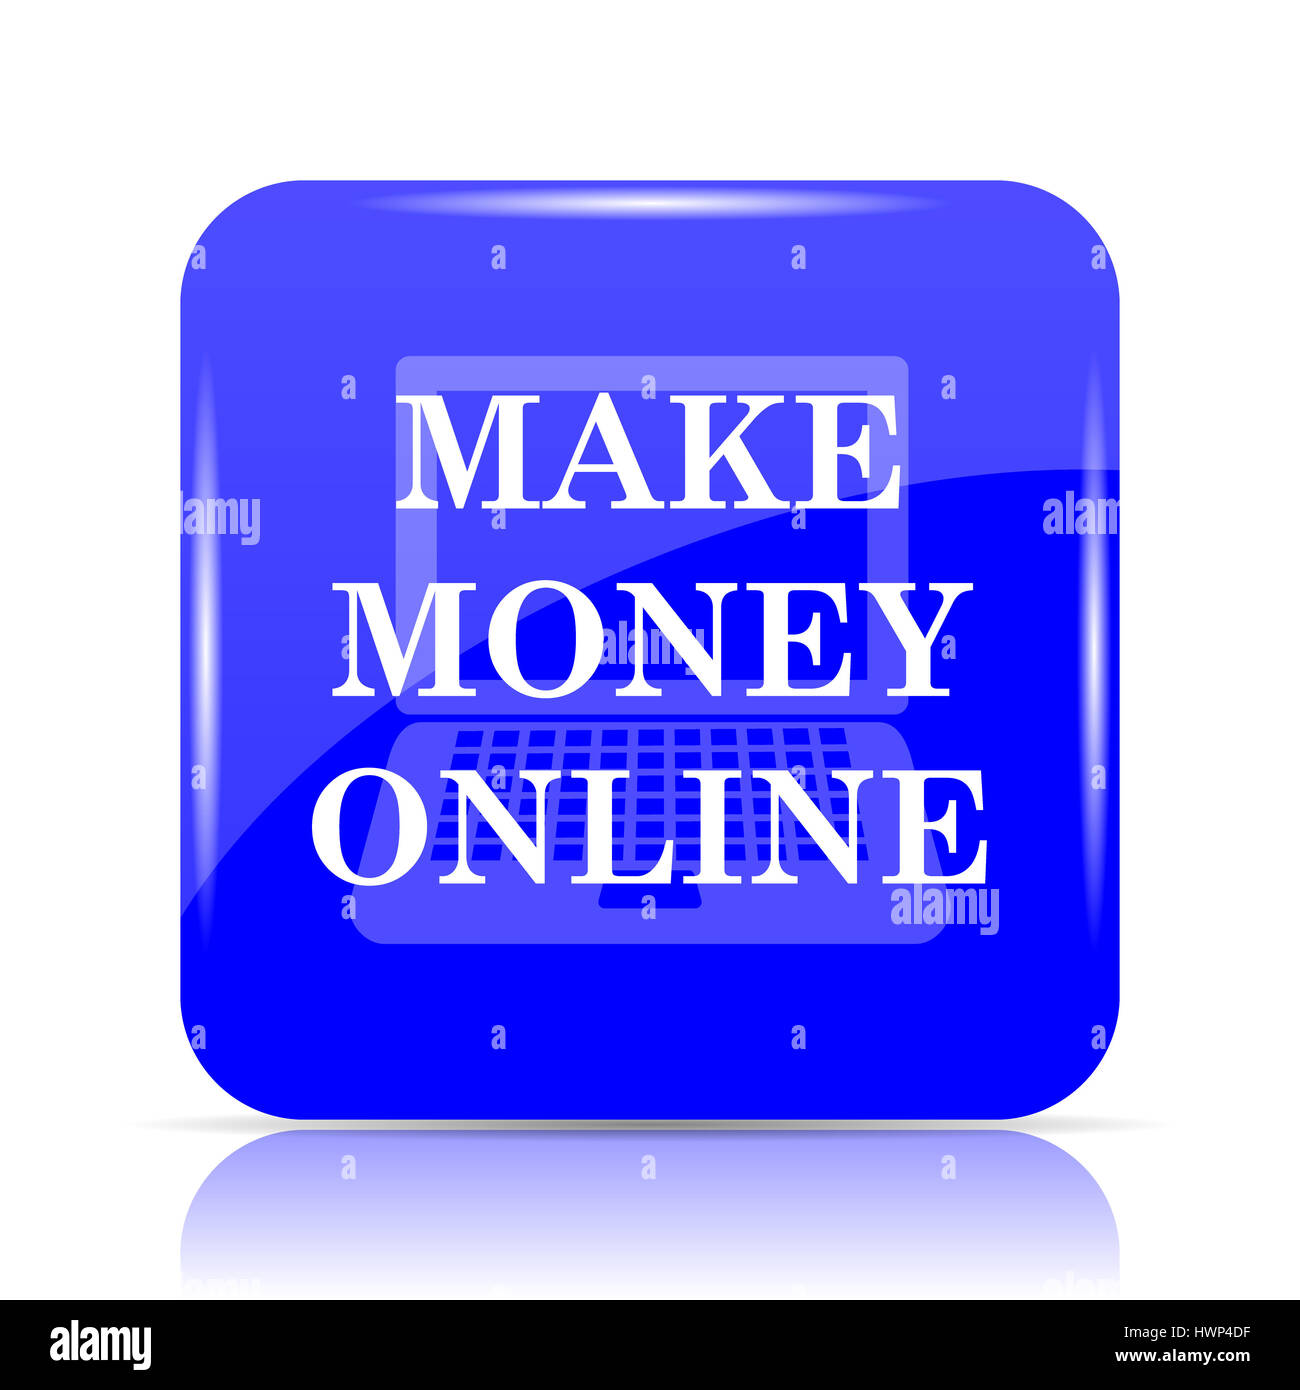 Bạn muốn kiếm tiền trực tuyến? Đây là cơ hội đáng giá cho bạn! Với những khóa học và kỹ năng chuyên môn, bạn có thể dễ dàng tạo ra thu nhập ổn định từ công việc trực tuyến. Hãy nhấn vào hình ảnh để khám phá thêm.